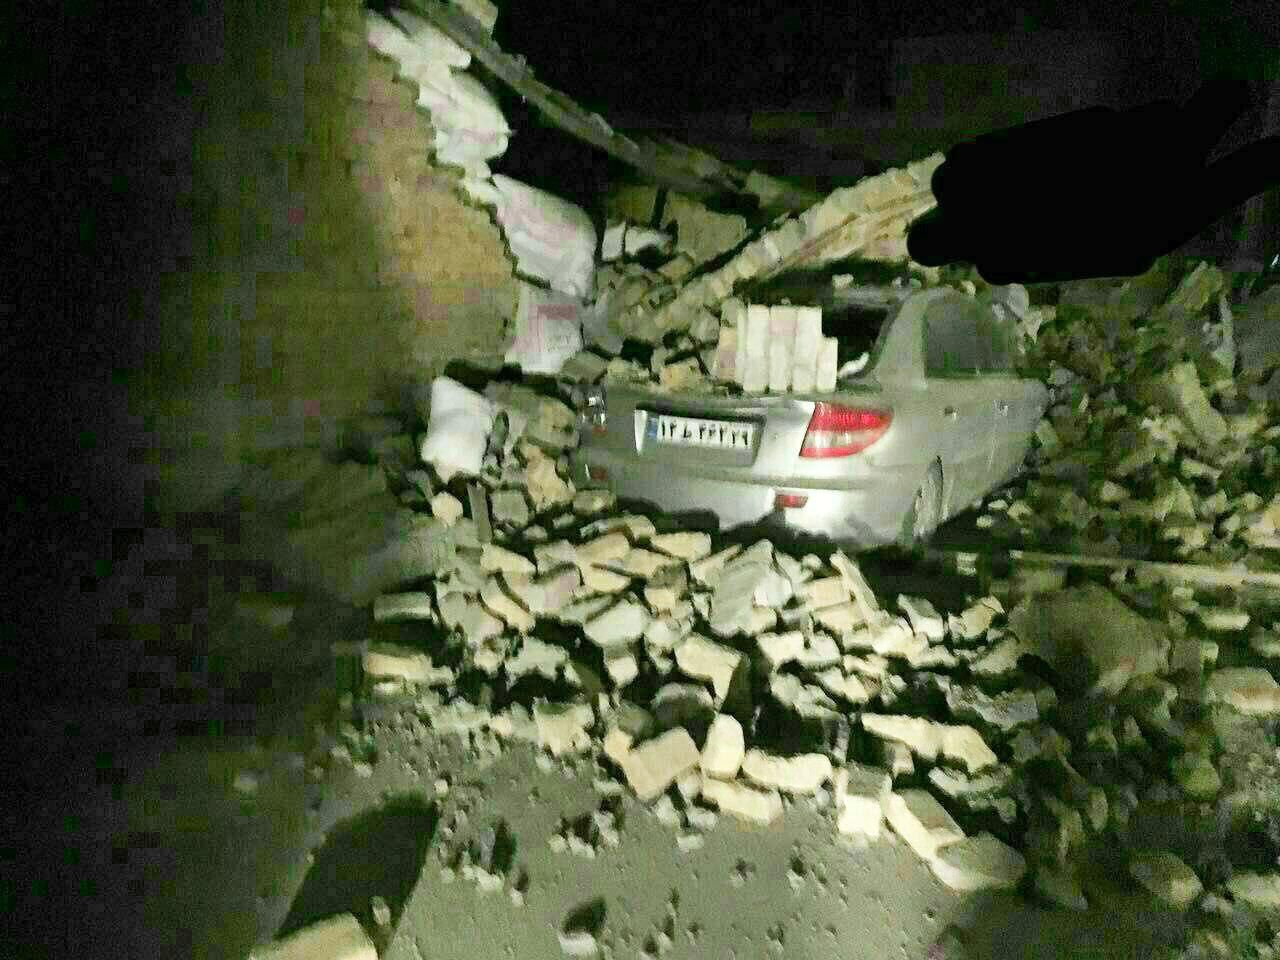 اعلام مناطق دارای بیشترین خسارت در زلزله دیشب + عکس